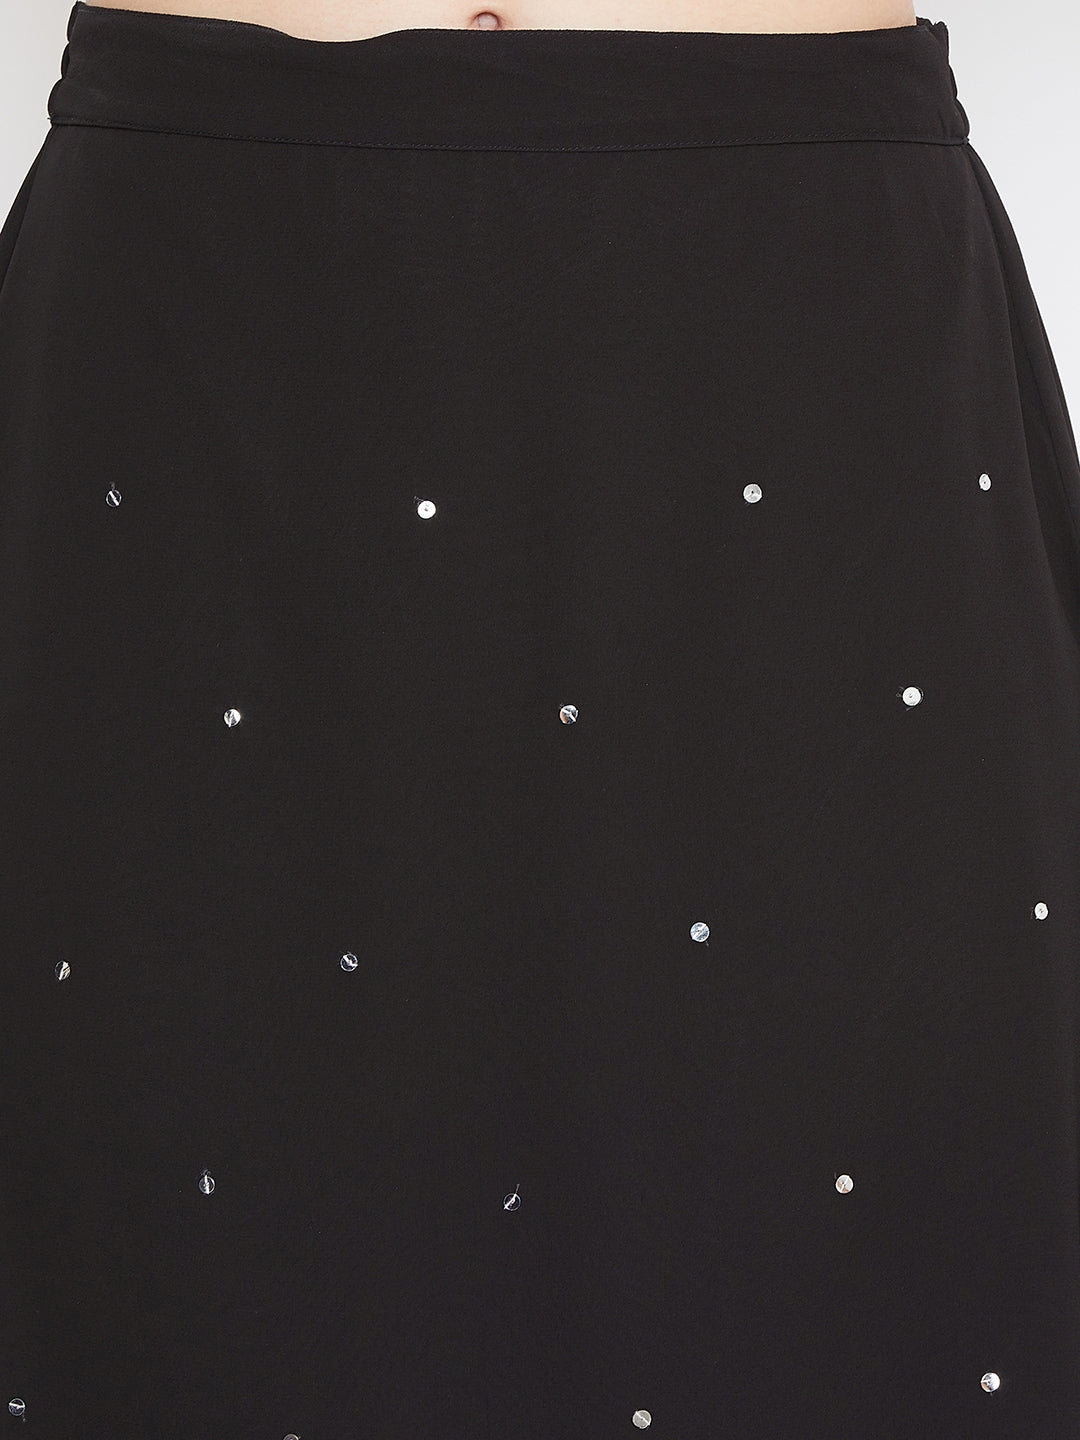 Black Hand Sequinned Gathered Skirt (Sku- BLJM20229).